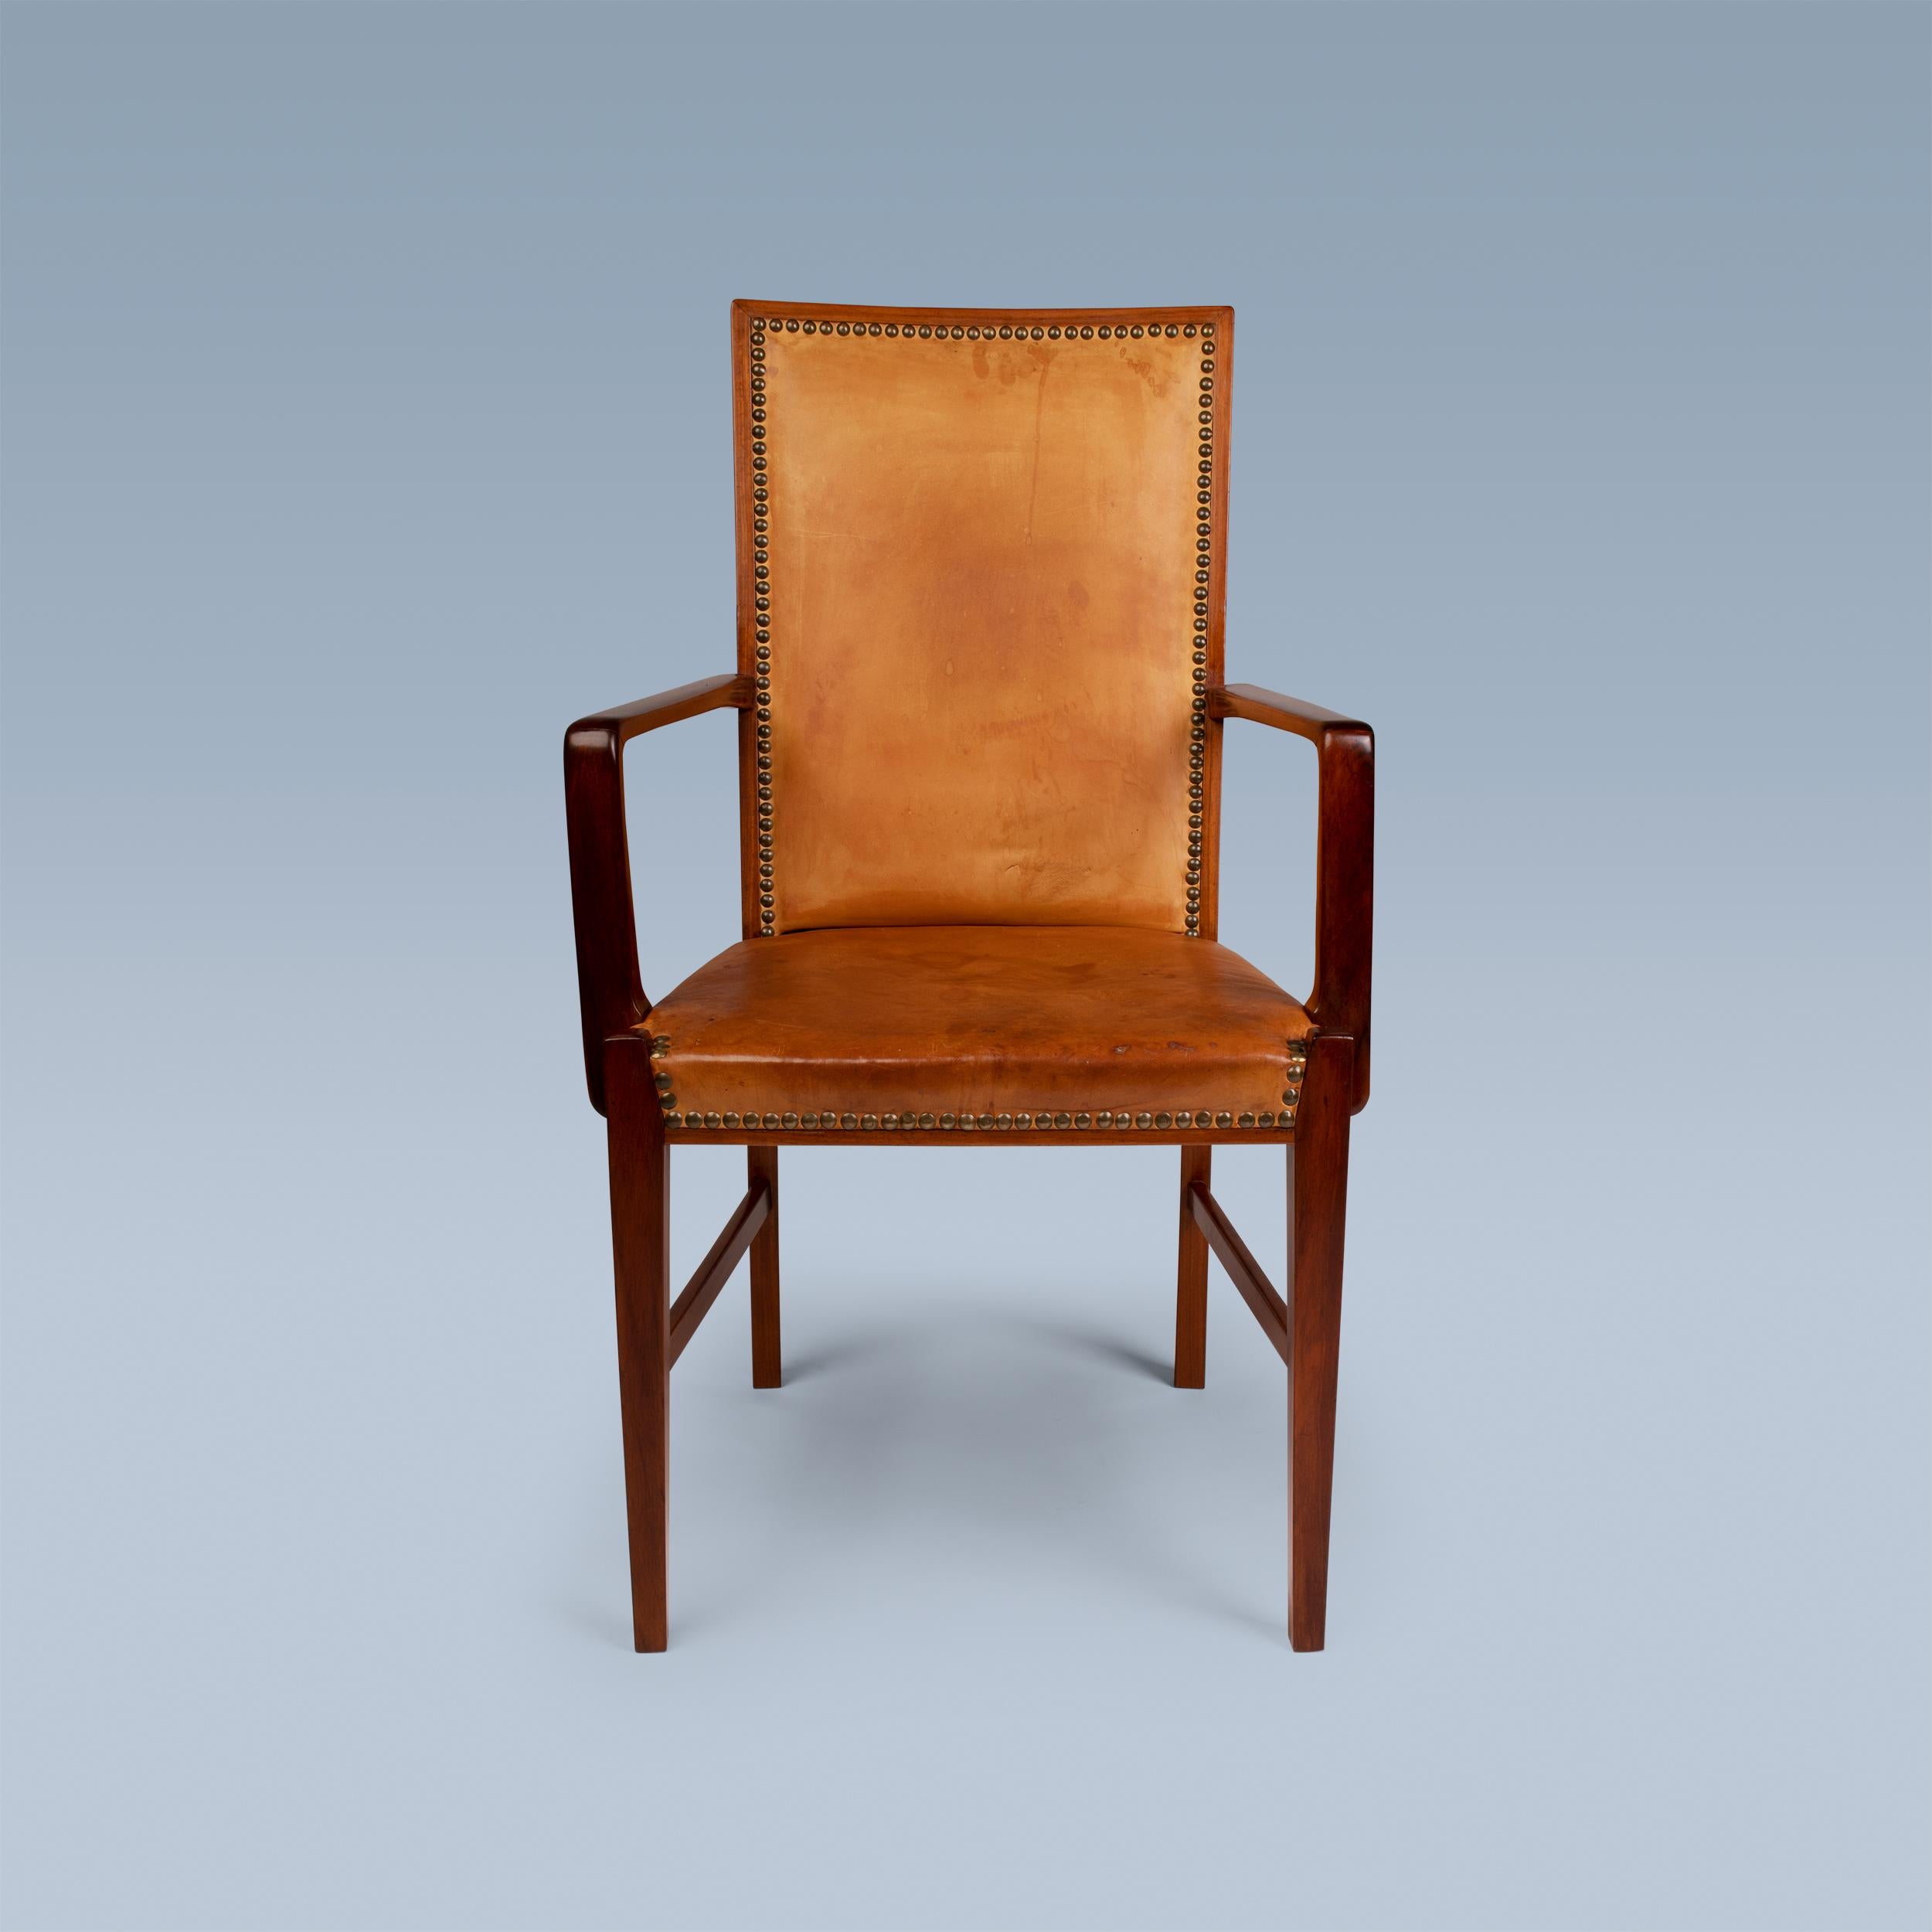 Ce fauteuil à dossier haut d'un ébéniste danois a un cadre en bois de noyer.
Il est recouvert de cuir patiné et muni de clous en laiton.
Chaise de bureau idéale ou chaise de table.